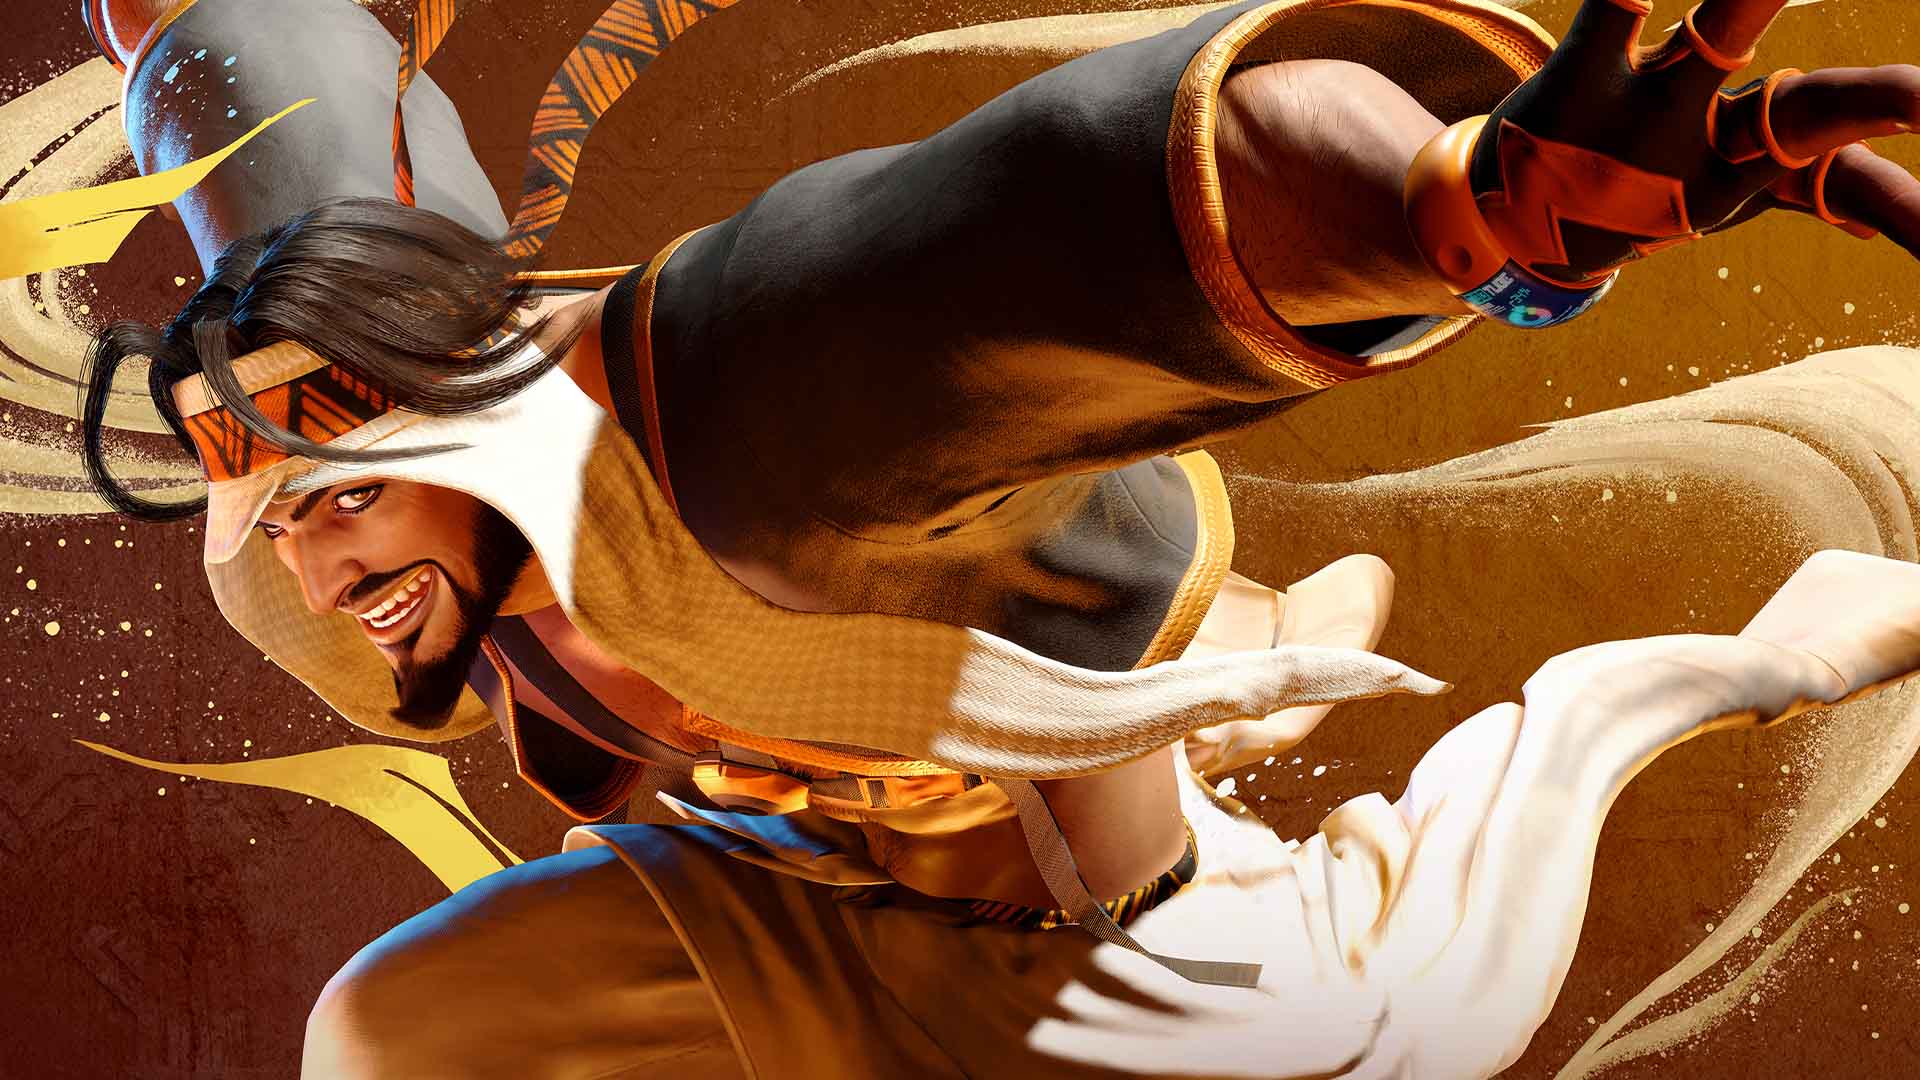 Capcom har udgivet en trailer for det første DLC til Street Fighter 6, som tilføjer en ny figur til spillet - Rashid.